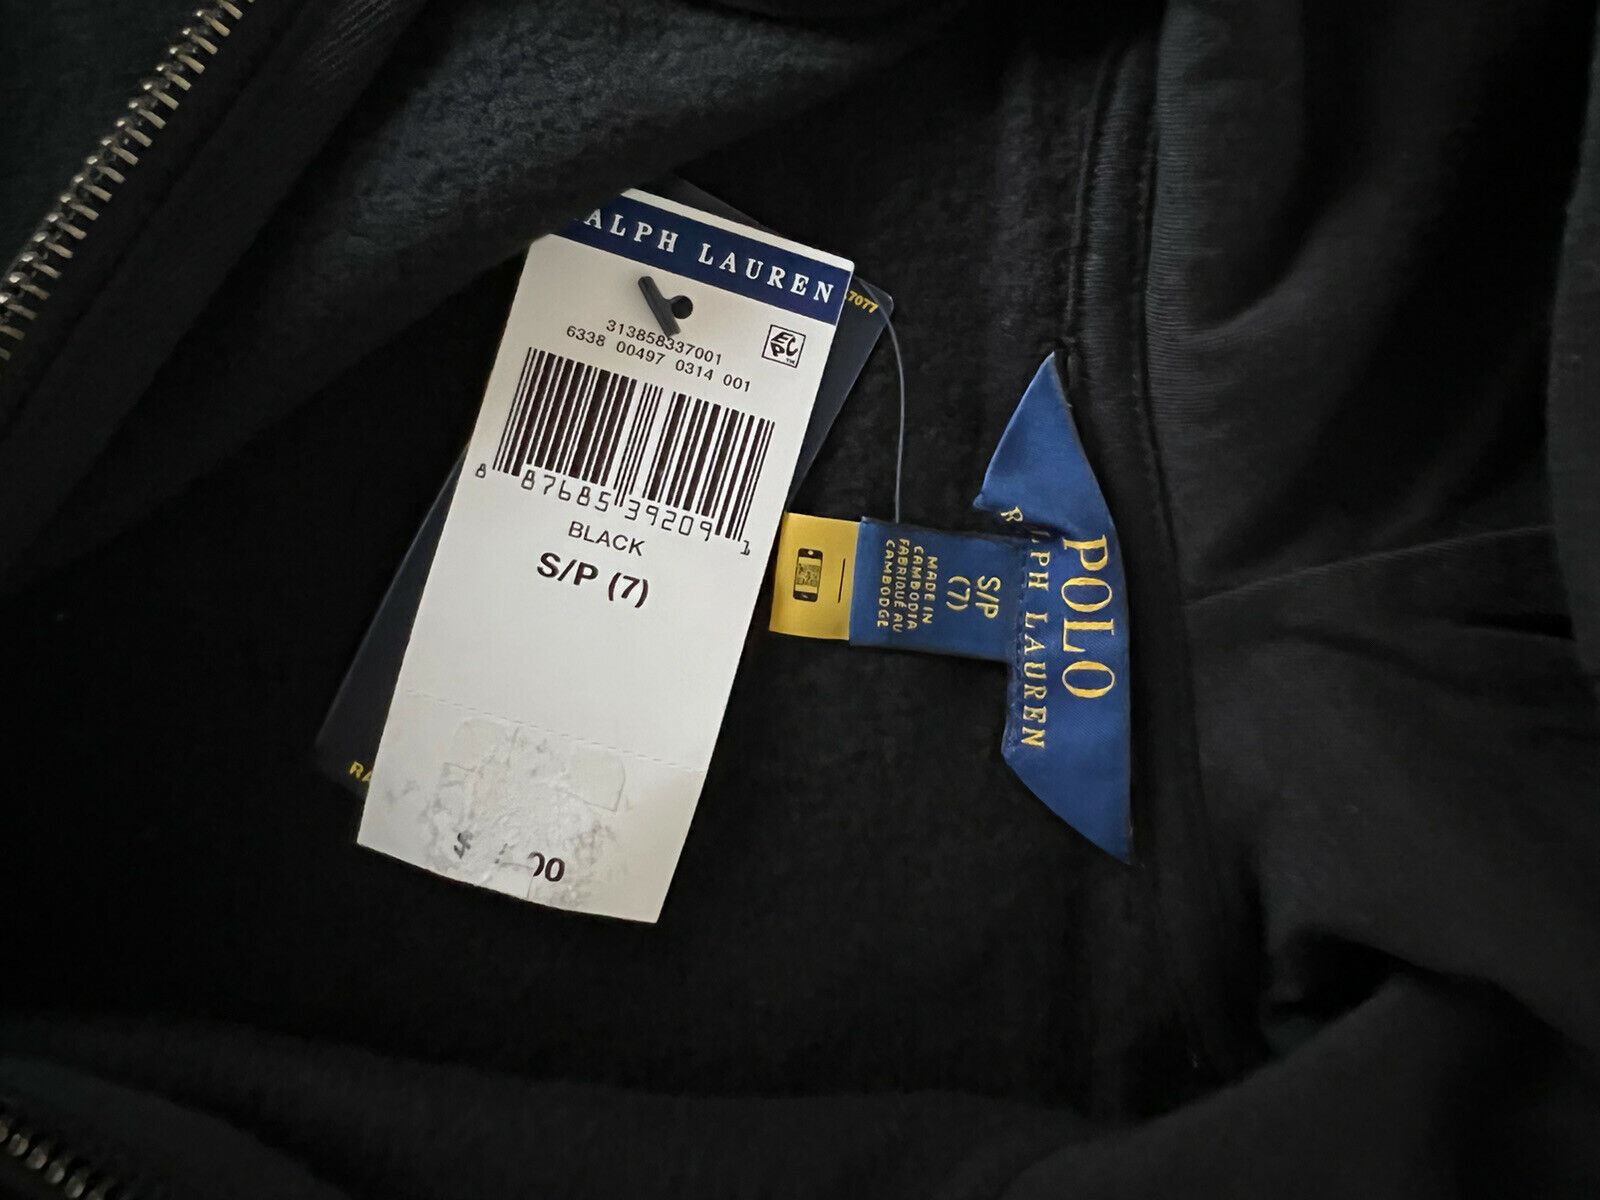 Черная куртка с капюшоном для девочек NWT Polo Ralph Lauren S (7)